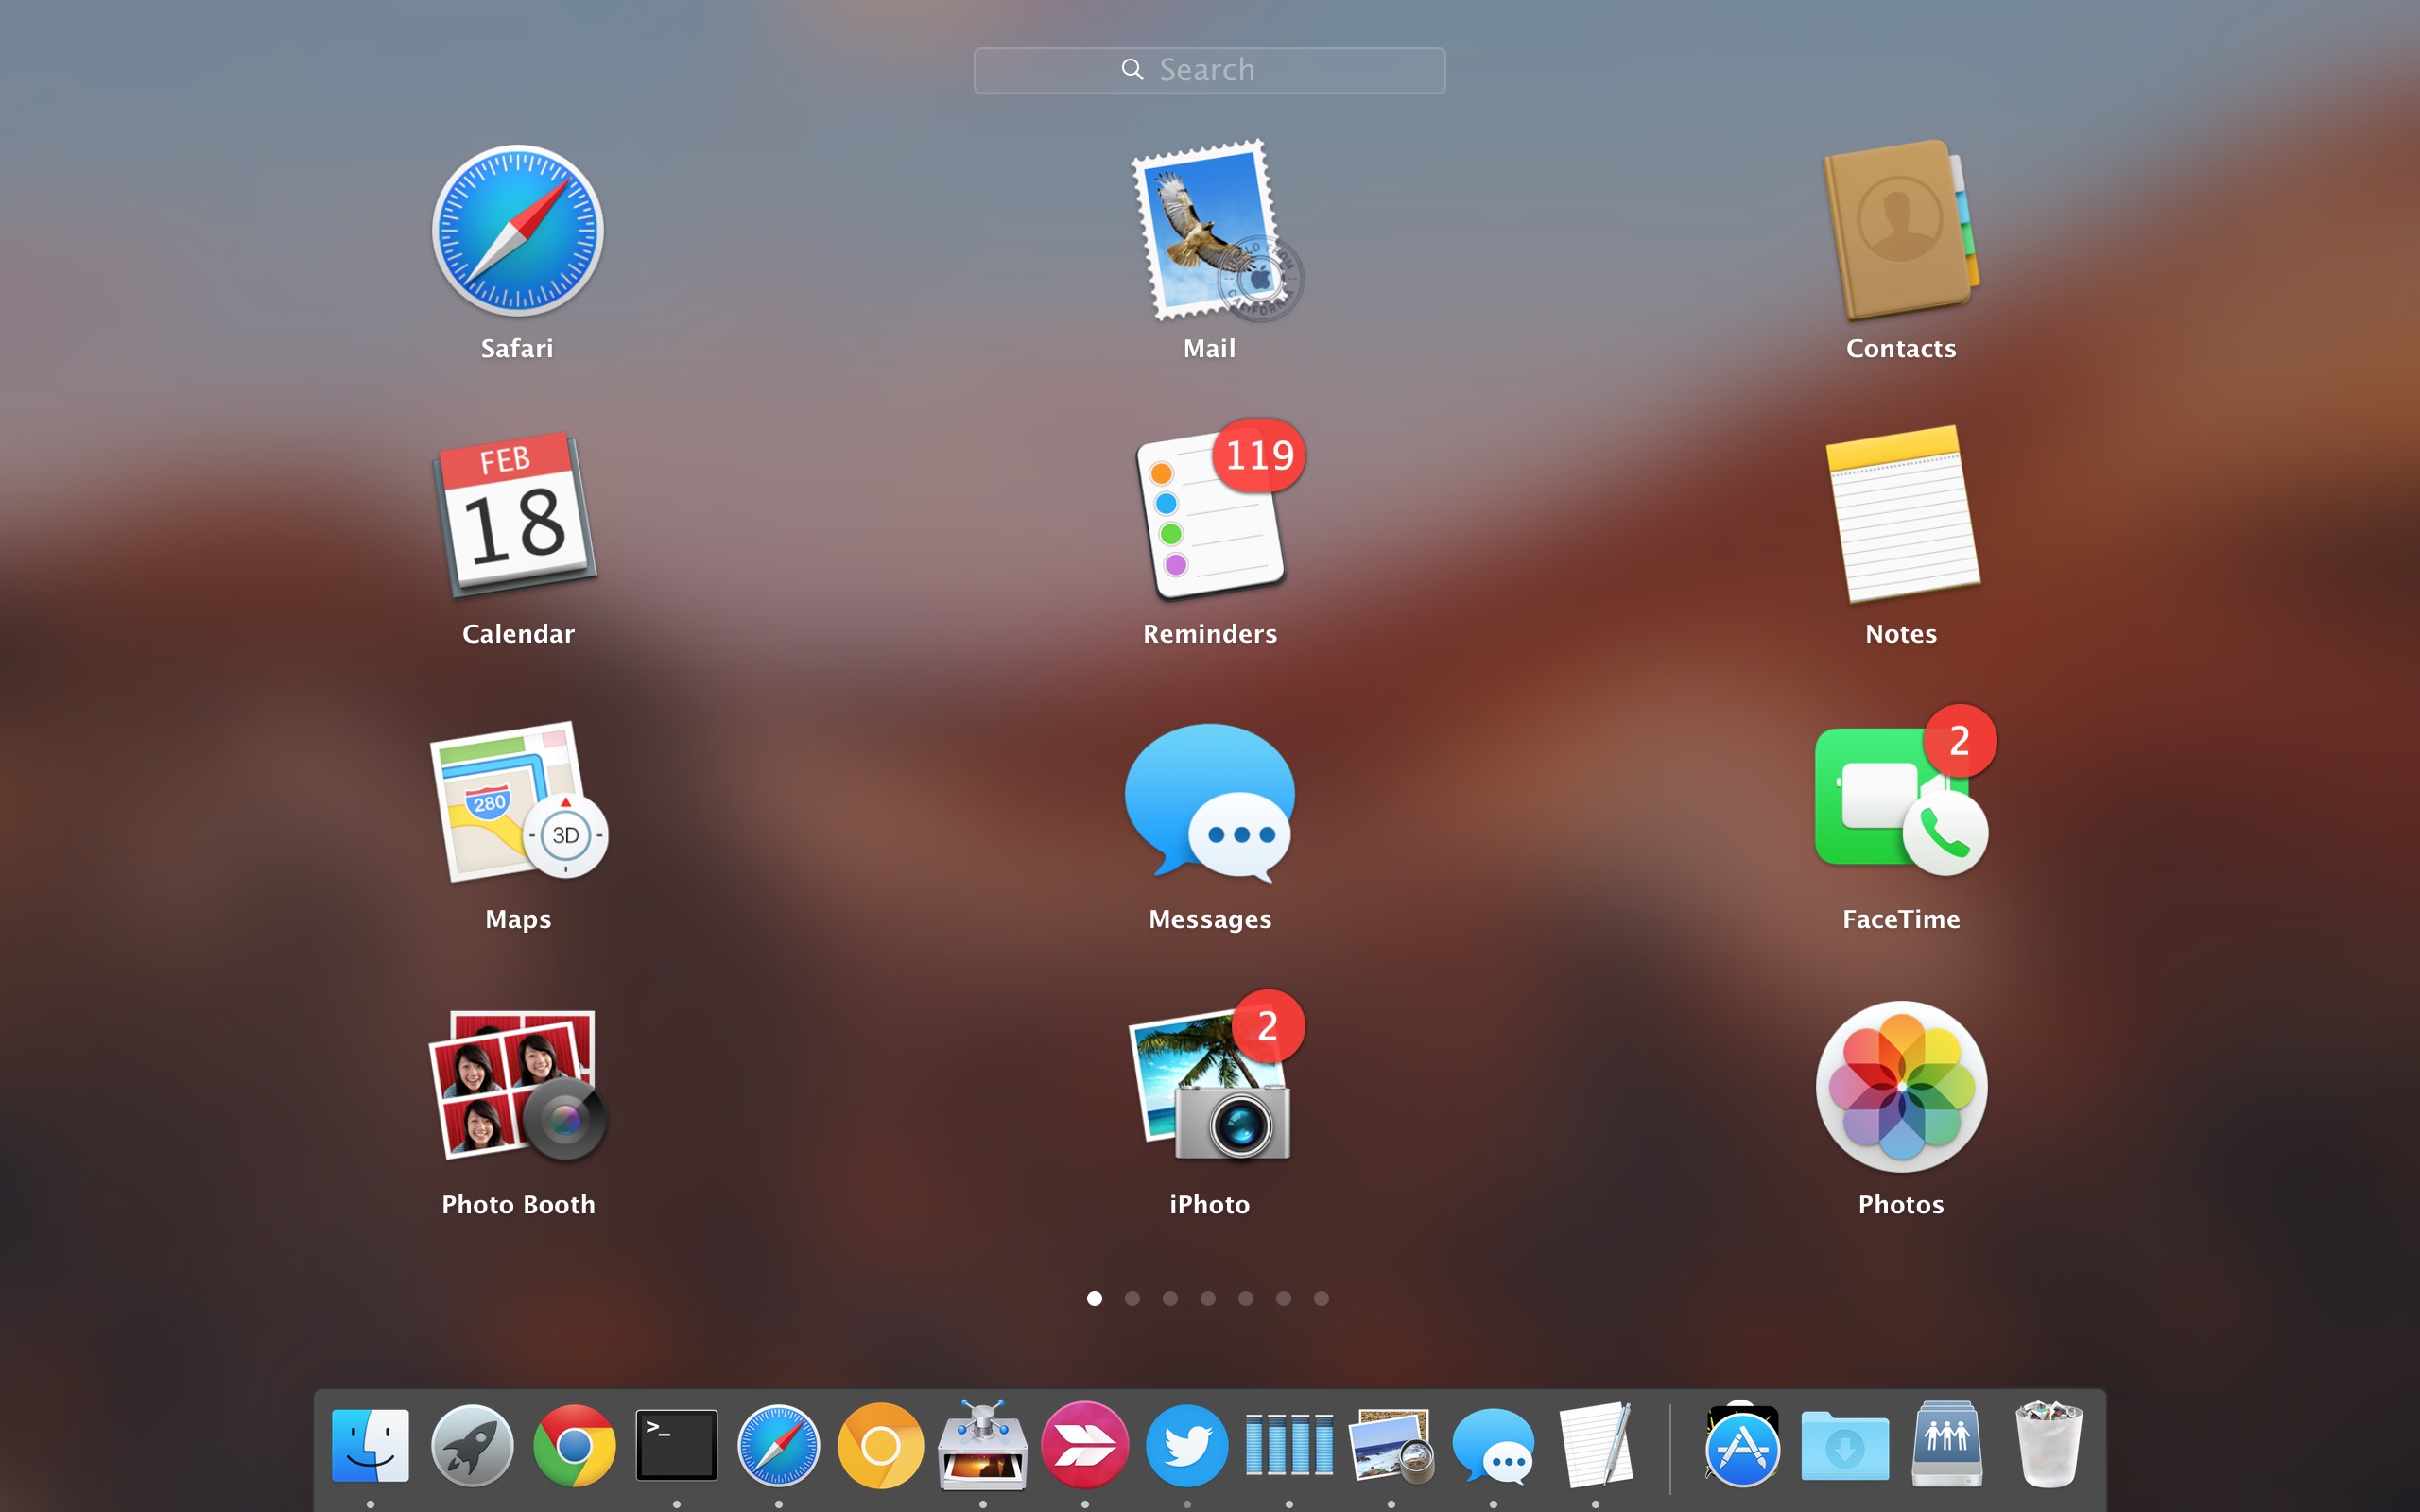 Delete Apps On Mac Os X Sierra